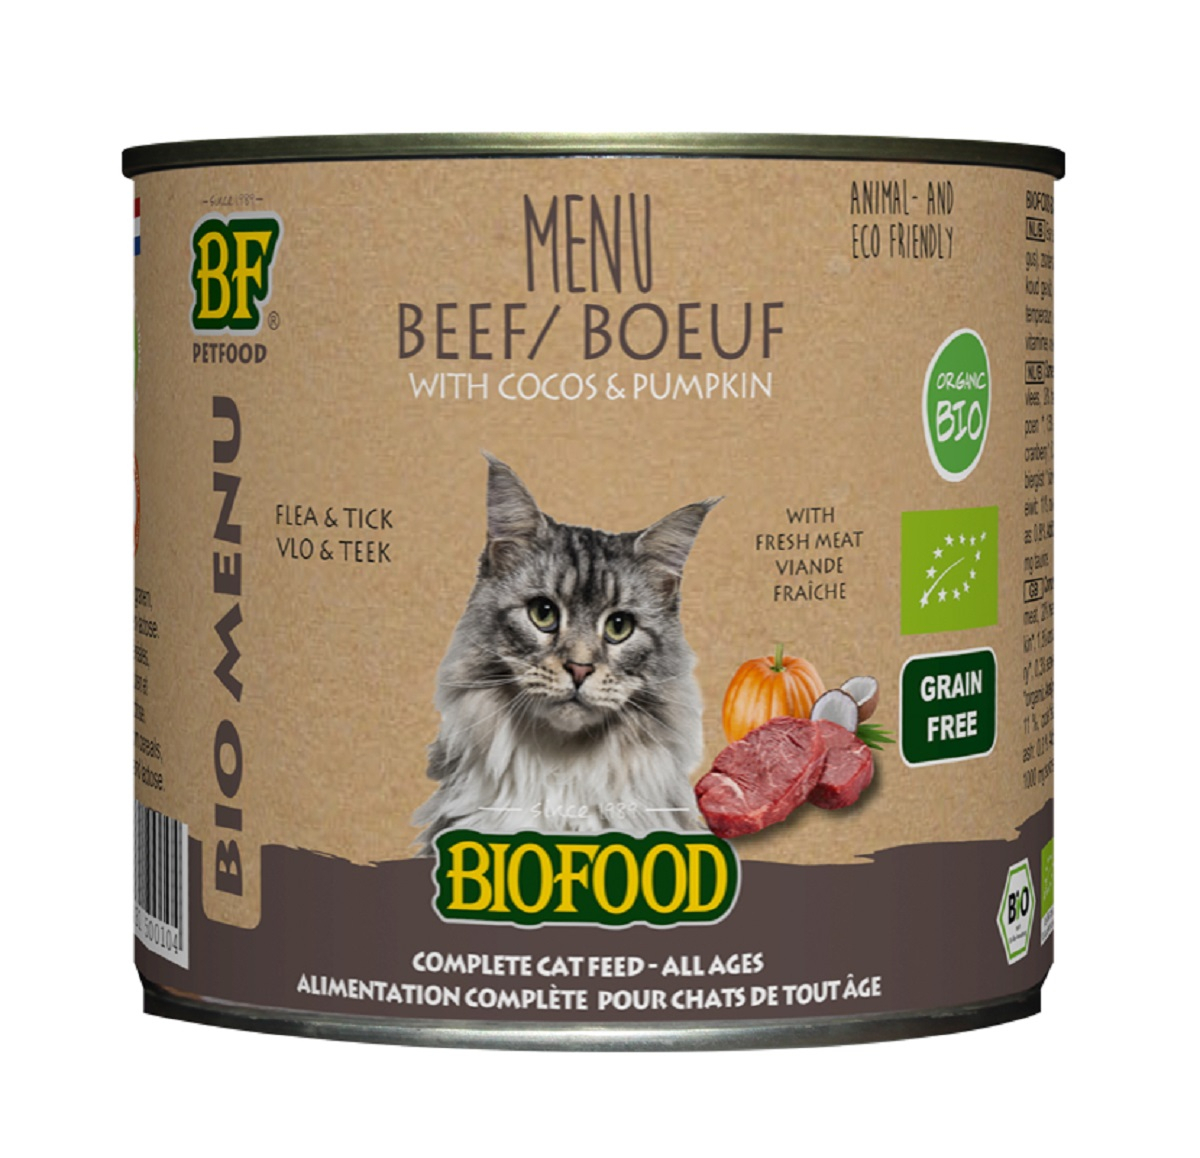 BF PETFOOD - BIOFOOD Menu BIO pâtée au bœuf pour chat